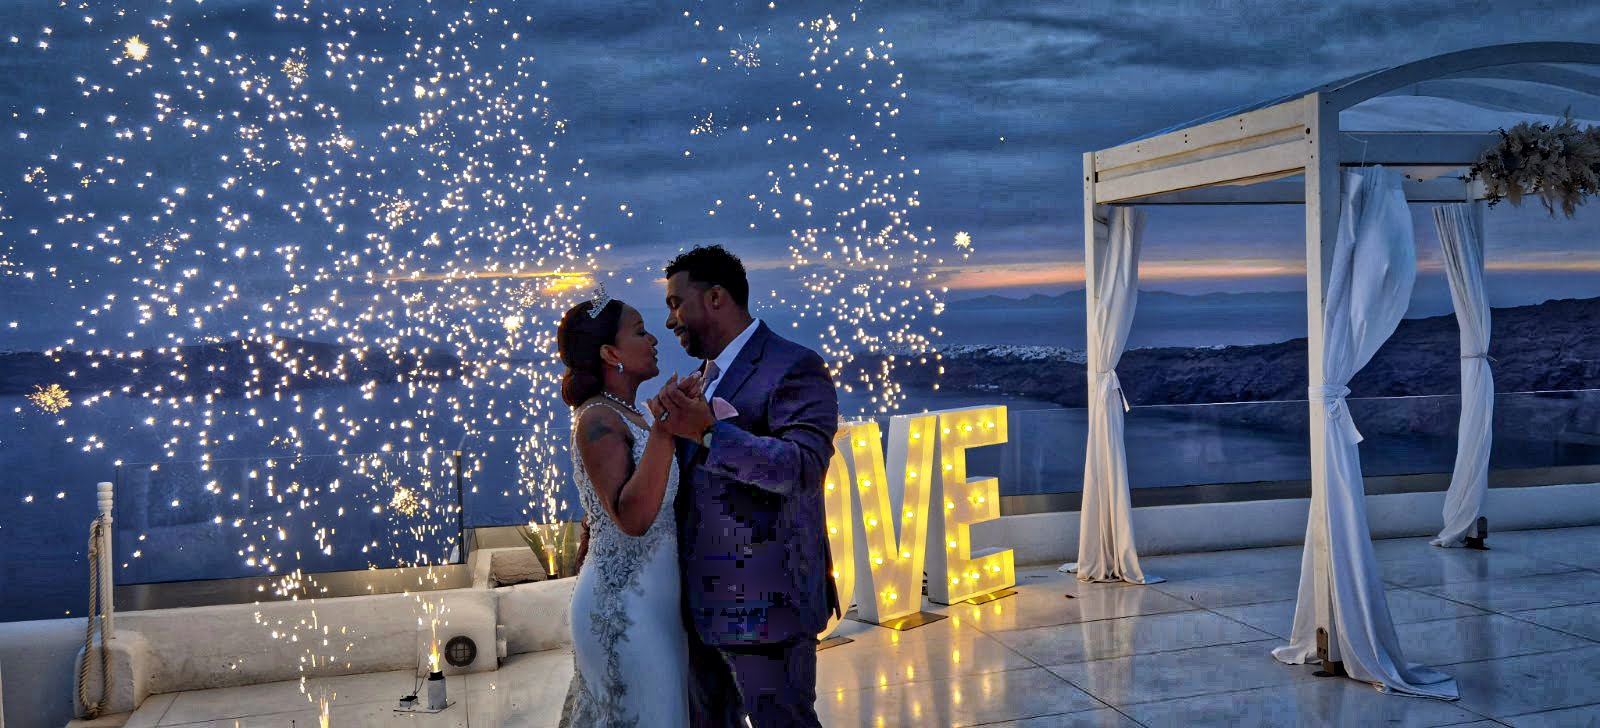 Wedding Fireworks in Santo Winery Santorini - First dance with Fireworks in santorini - Love letters in Santorini